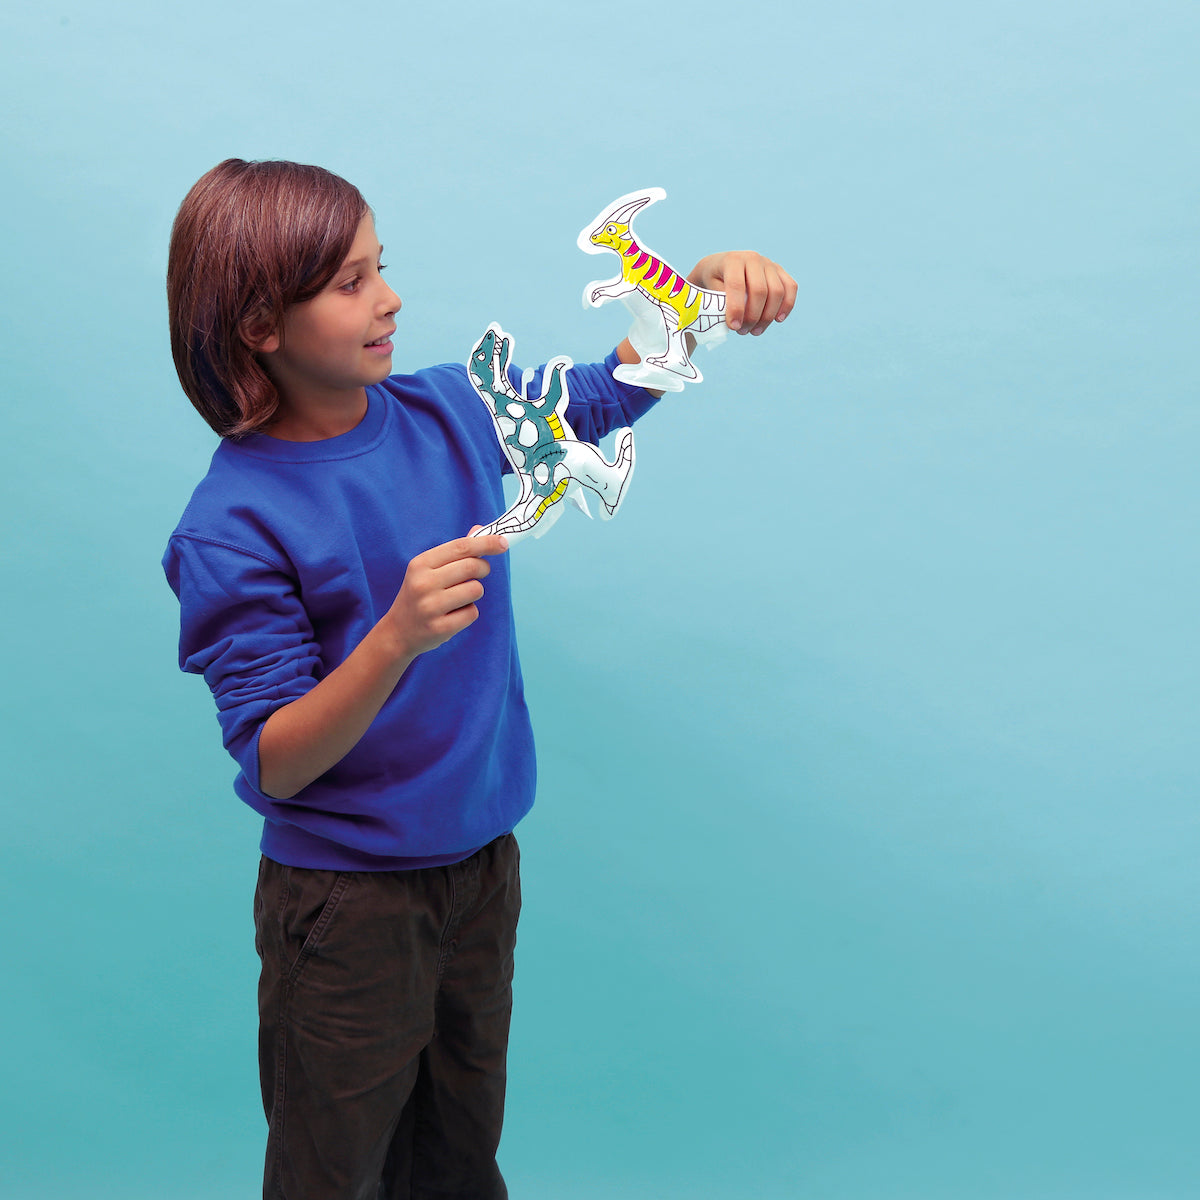 De OMY air toy opblaasbare kleurplaat dino zorgt voor urenlang speelplezier voor je kindje. Deze leuke kleurplaat kun je inkleuren, opblazen en er vervolgens lekker mee spelen of gebruiken als decoratie. VanZus